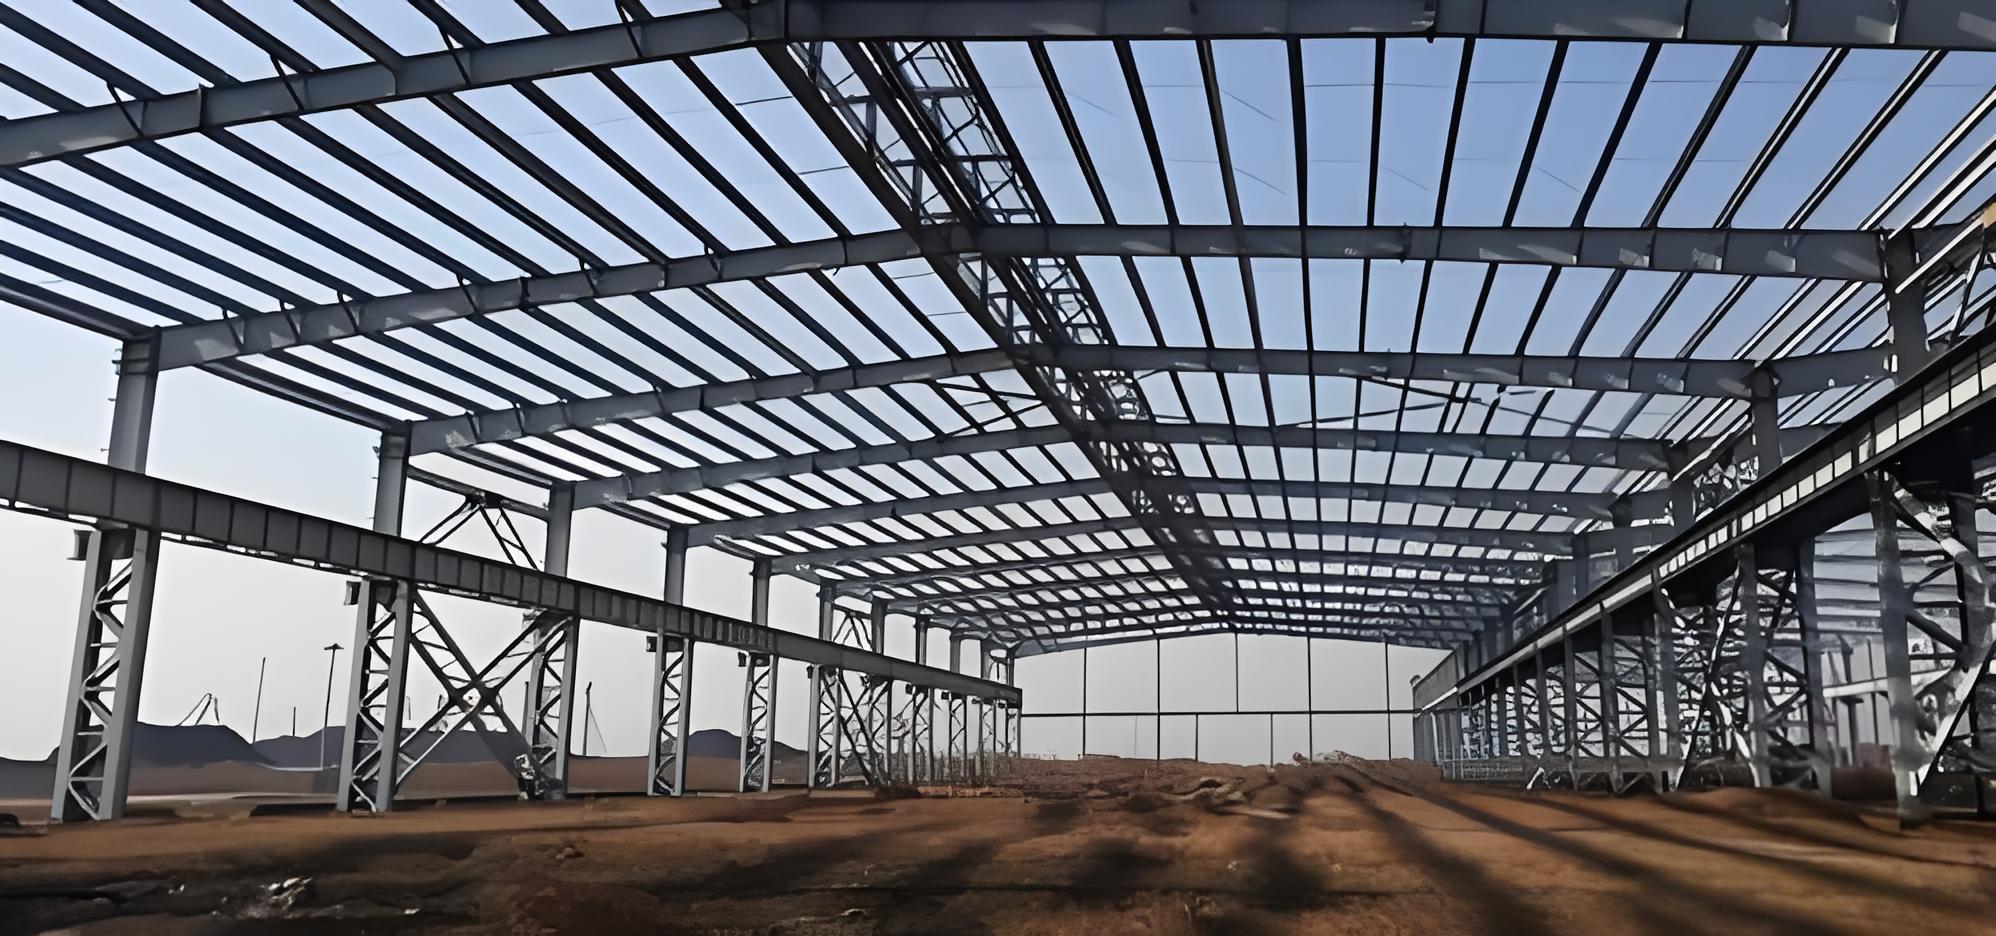 哈密钢结构工程为企业提供可靠的工作环境